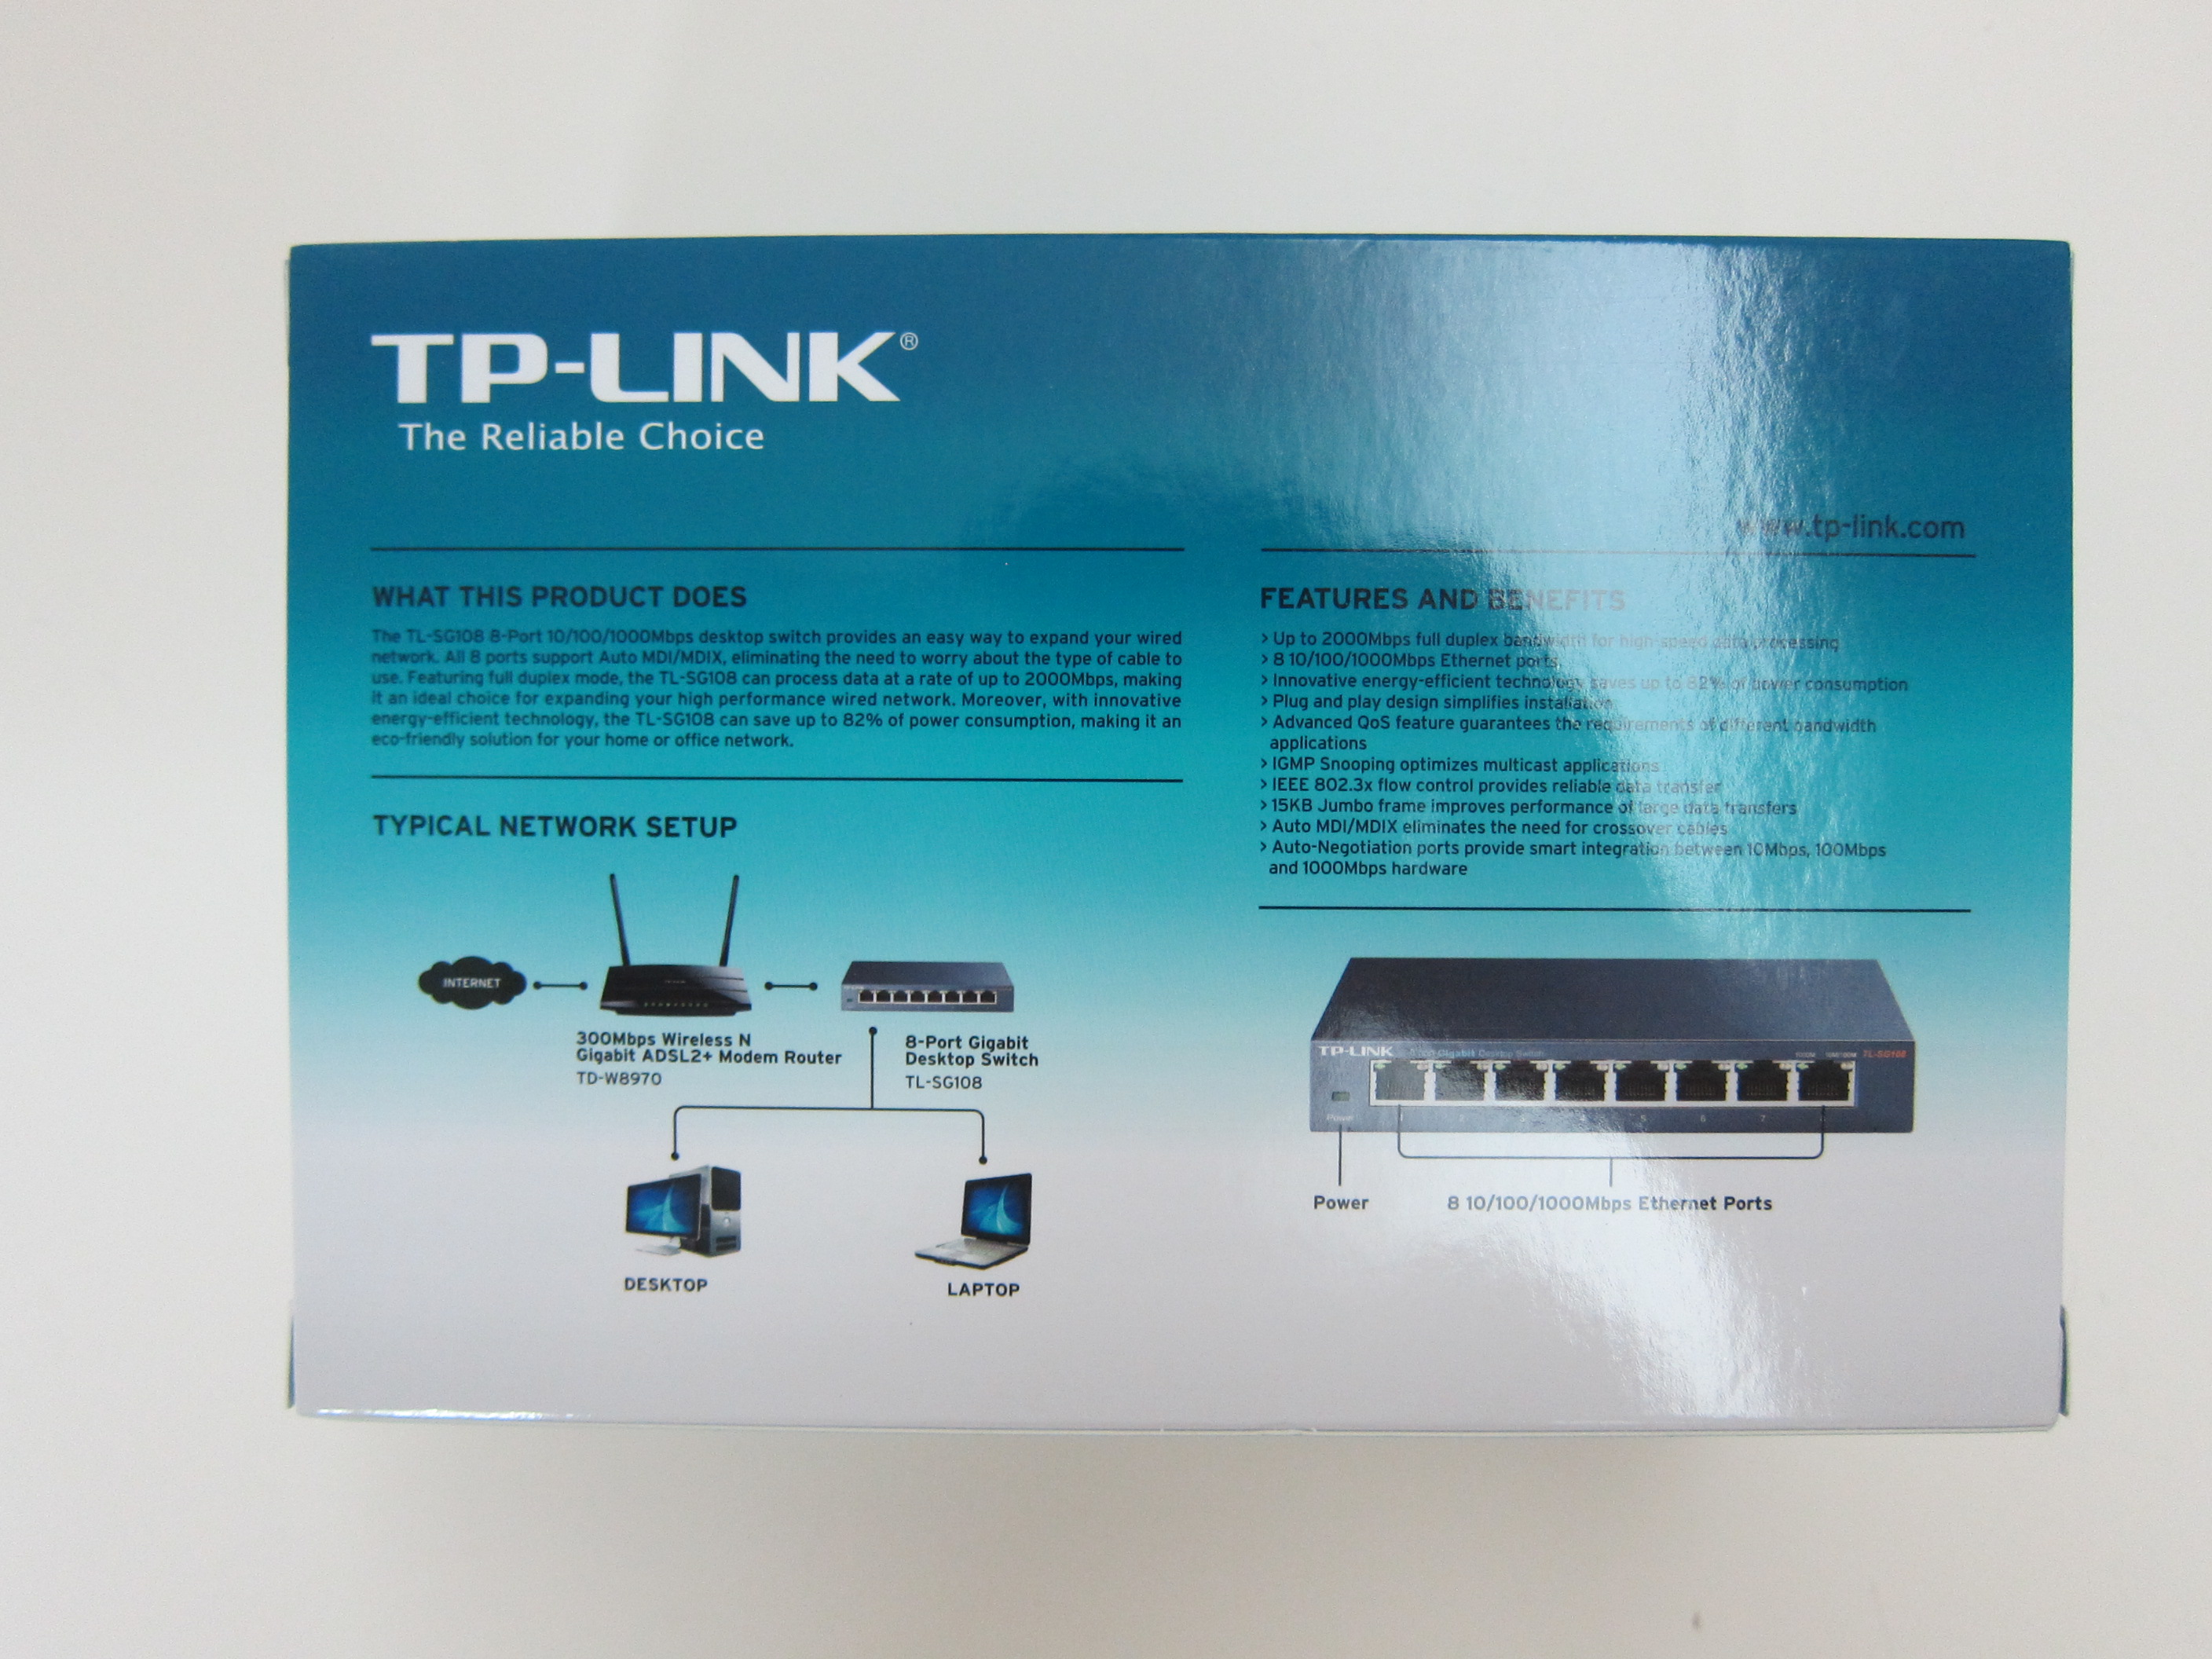 TP-Link TL-SG108 8-Port Gigabit Switch